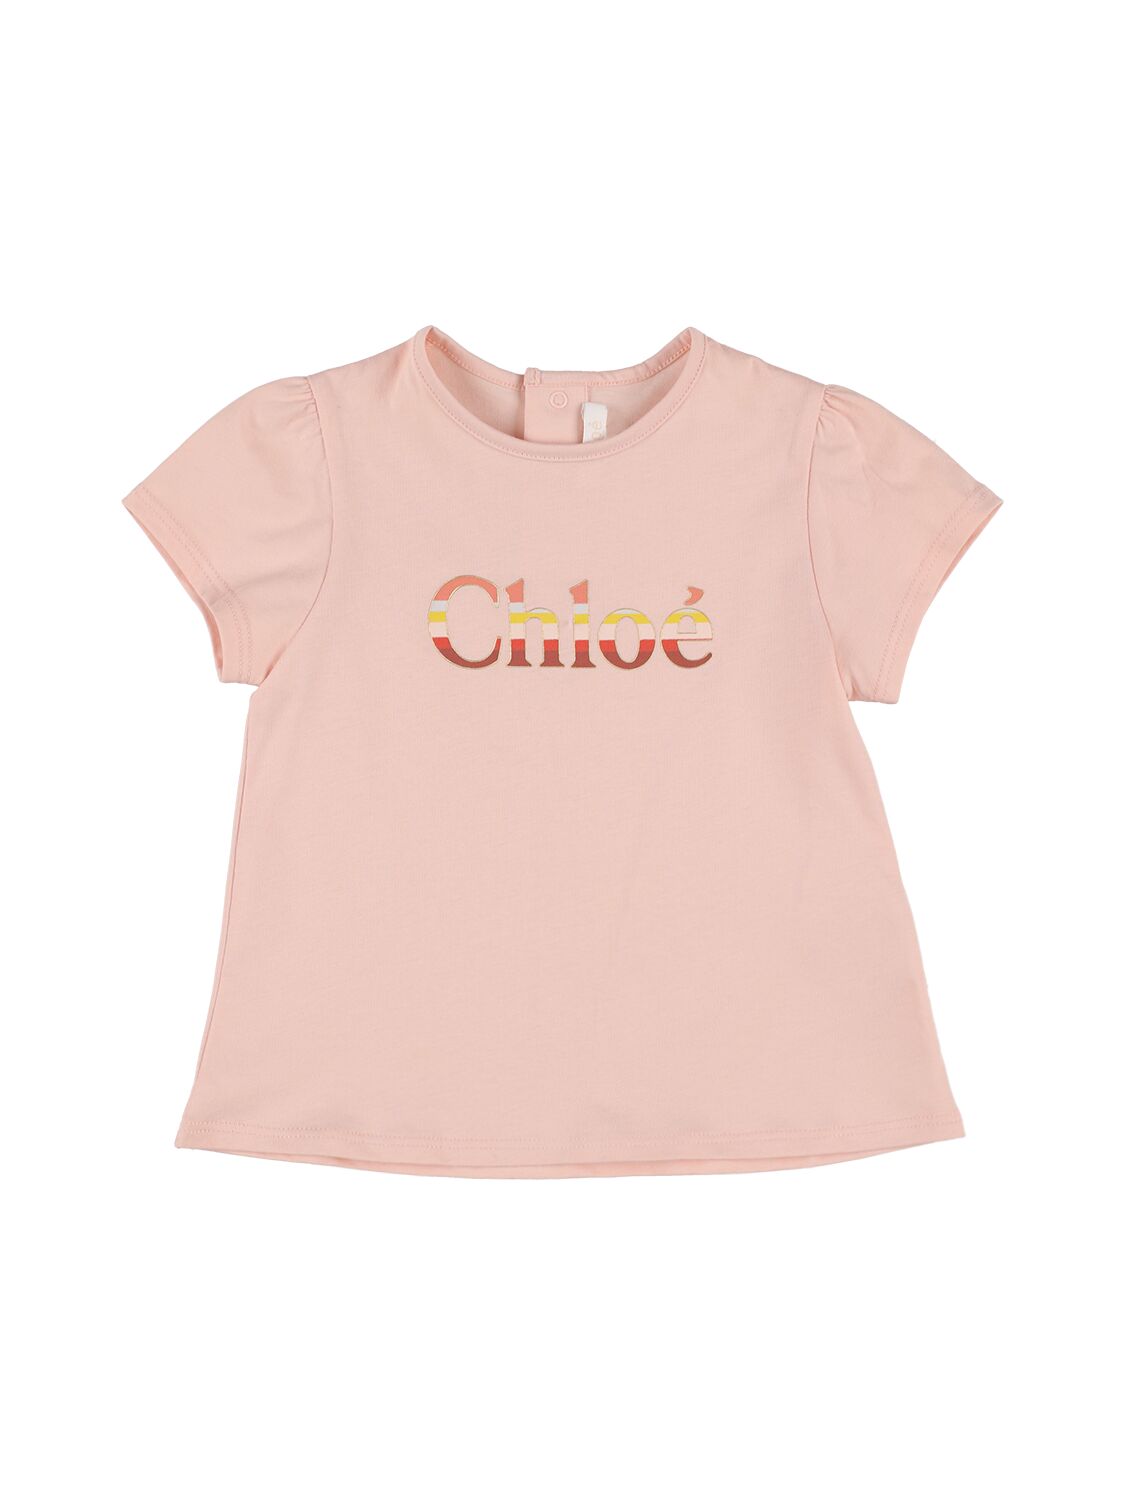 Chloé Kids' Logo Print Organic Cotton T-shirt In Pink